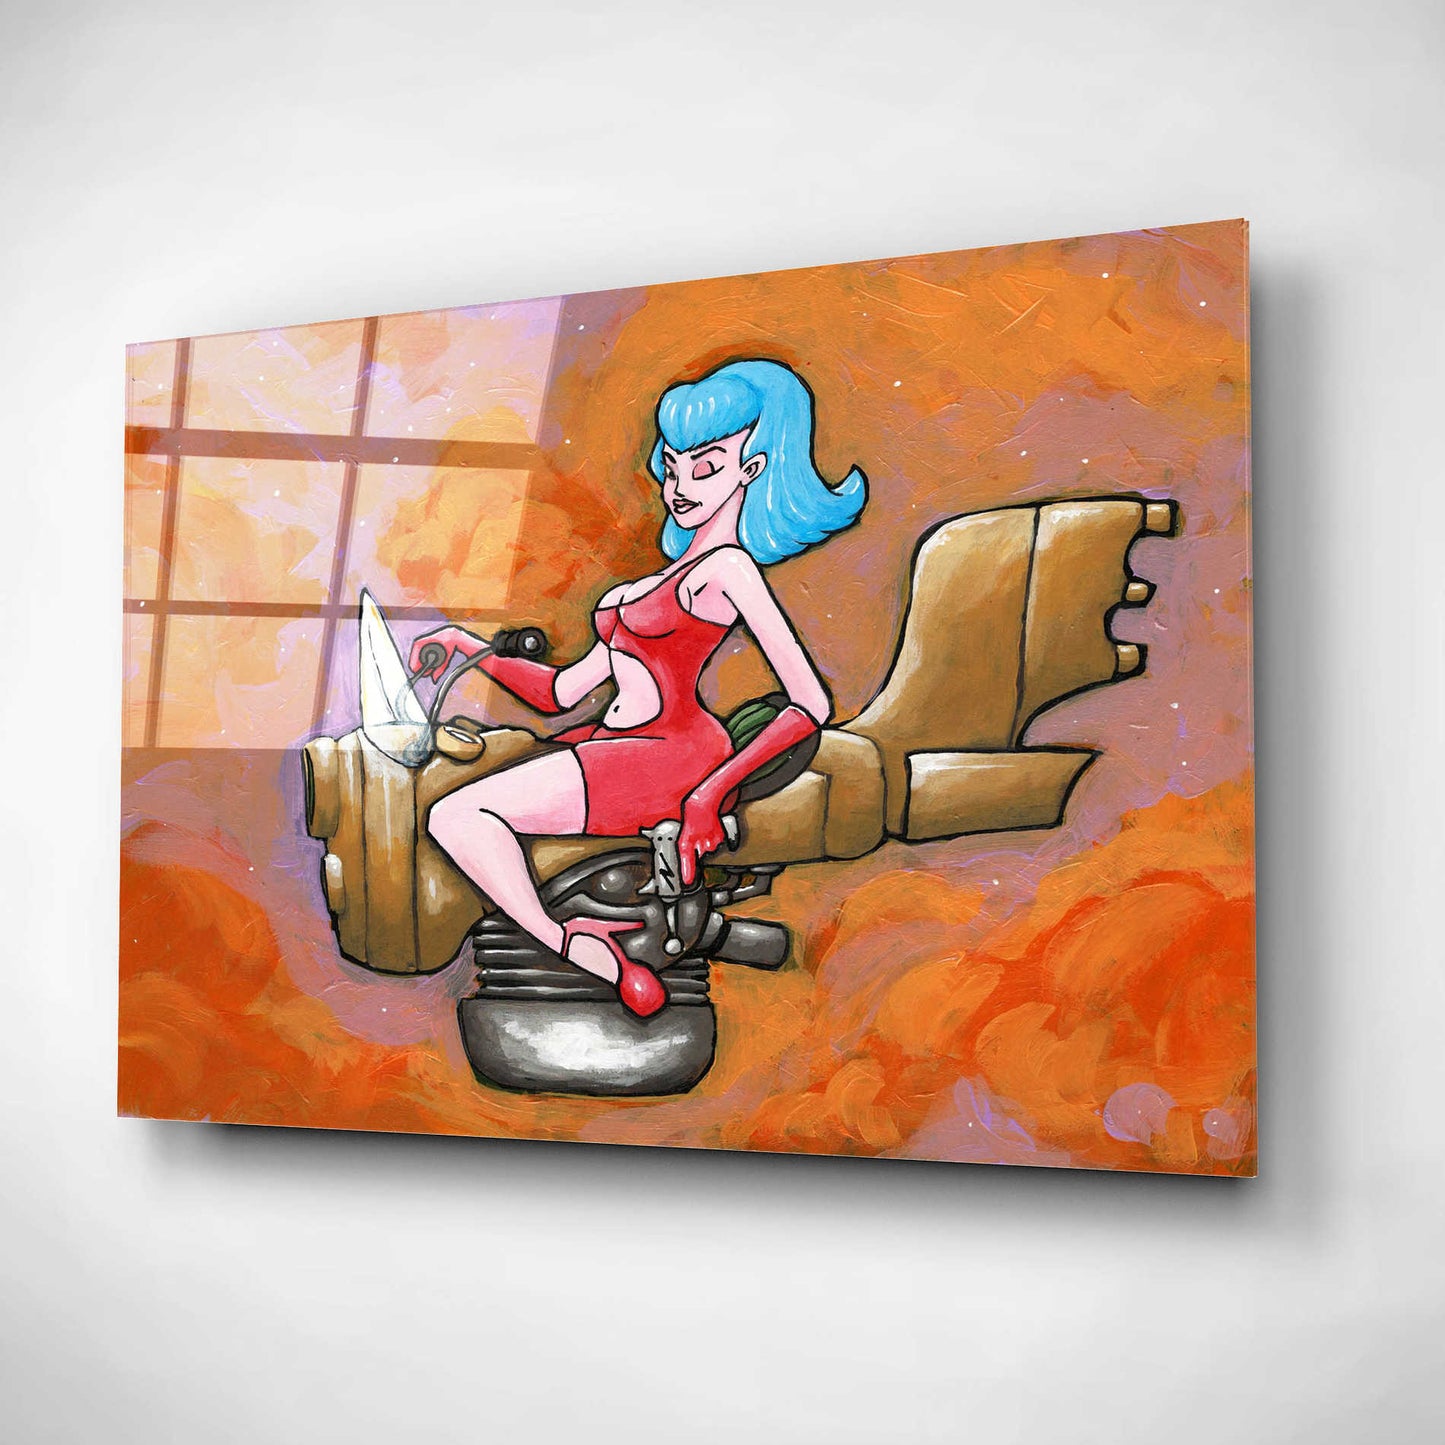 Epic Art 'Rocket Queen Paint' by Craig Snodgrass, Acrylic Glass Wall Art,16x12